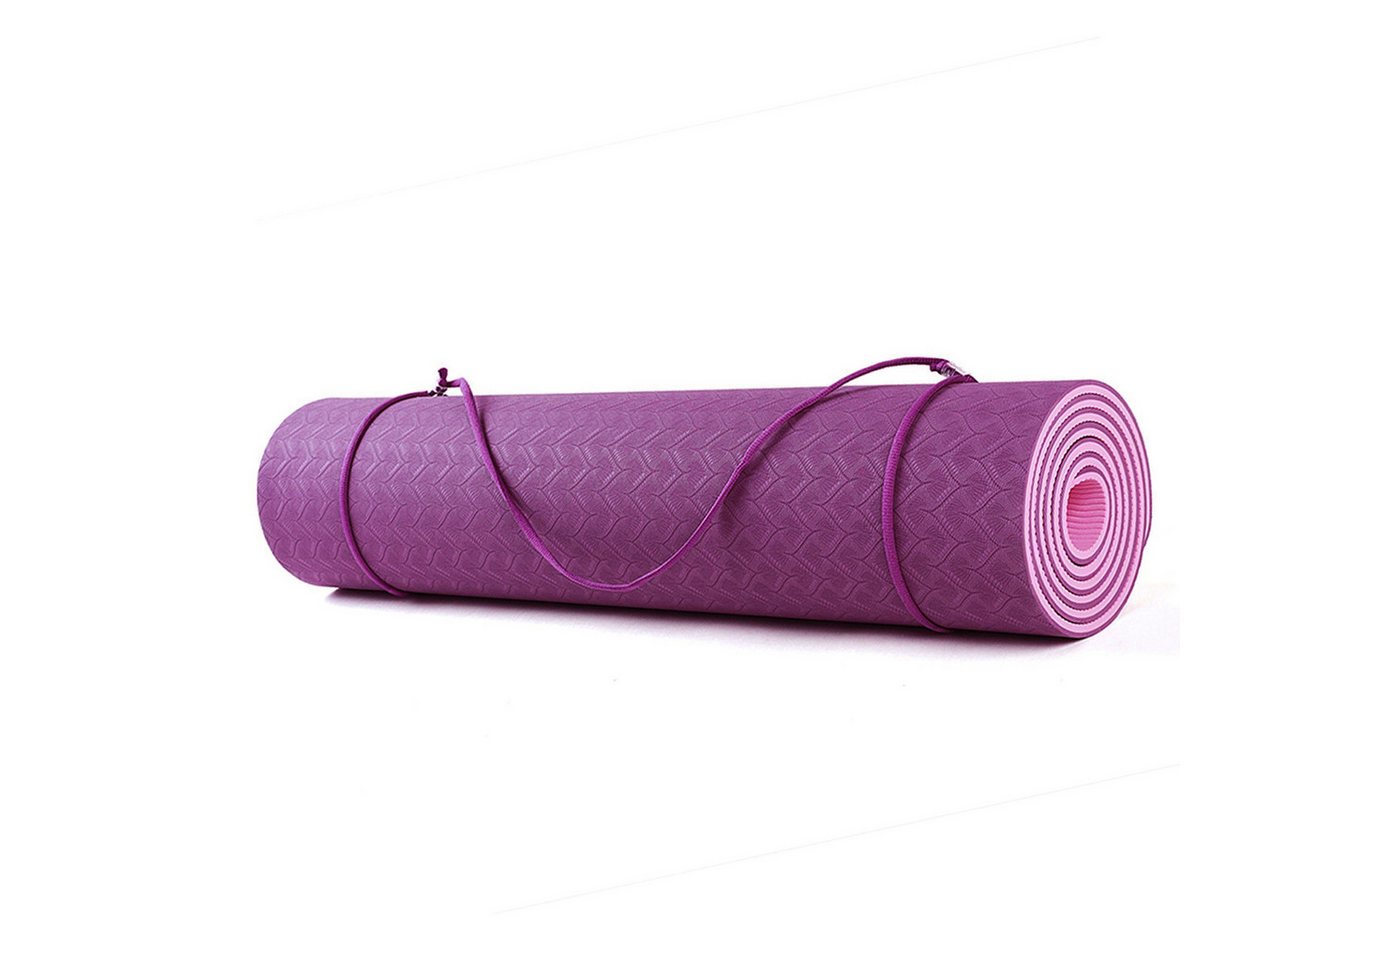 Technofit Yogamatte Yoga Fitnessmatte Bordeaux-lila 183 cm x 61 cm x 0,6 cm, mit robuster Fertigung, standfest von Technofit